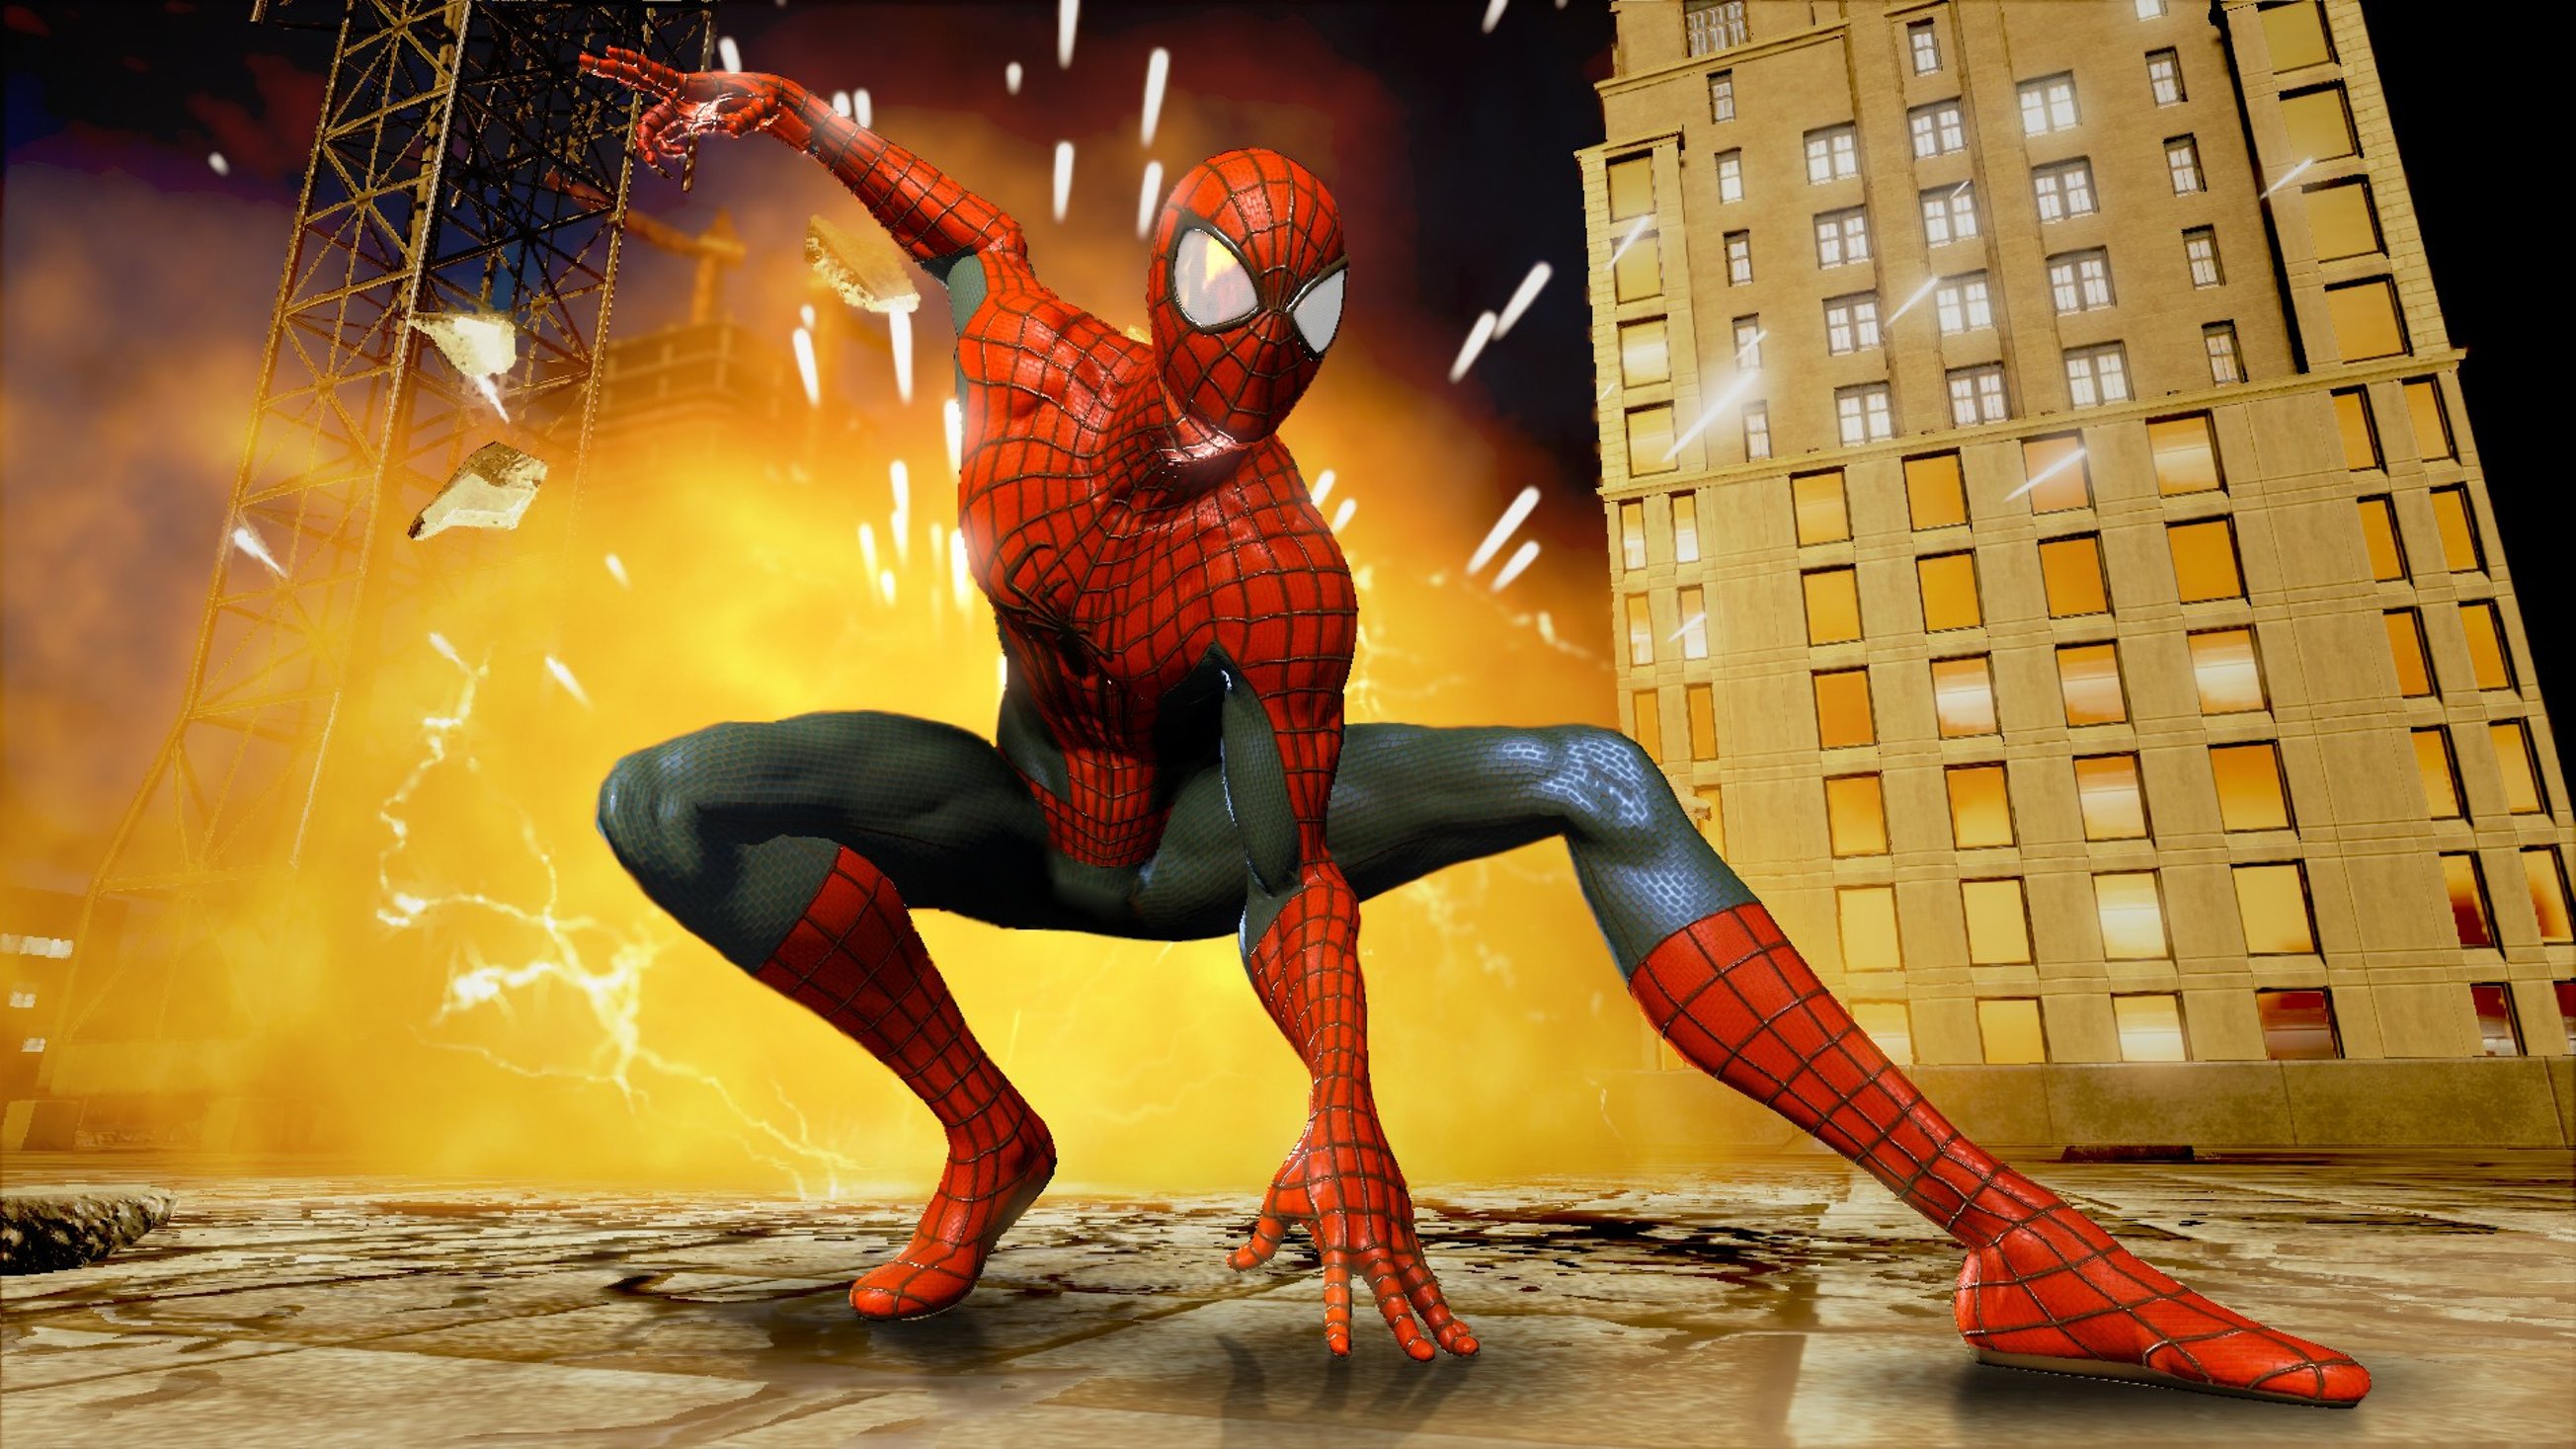 Игра город человека паука. Spider-man 2. Амазинг Спайдер Мэн 2. The amazing Spider-man игра 2014. The amazing Spider-man 2 (игра, 2014).